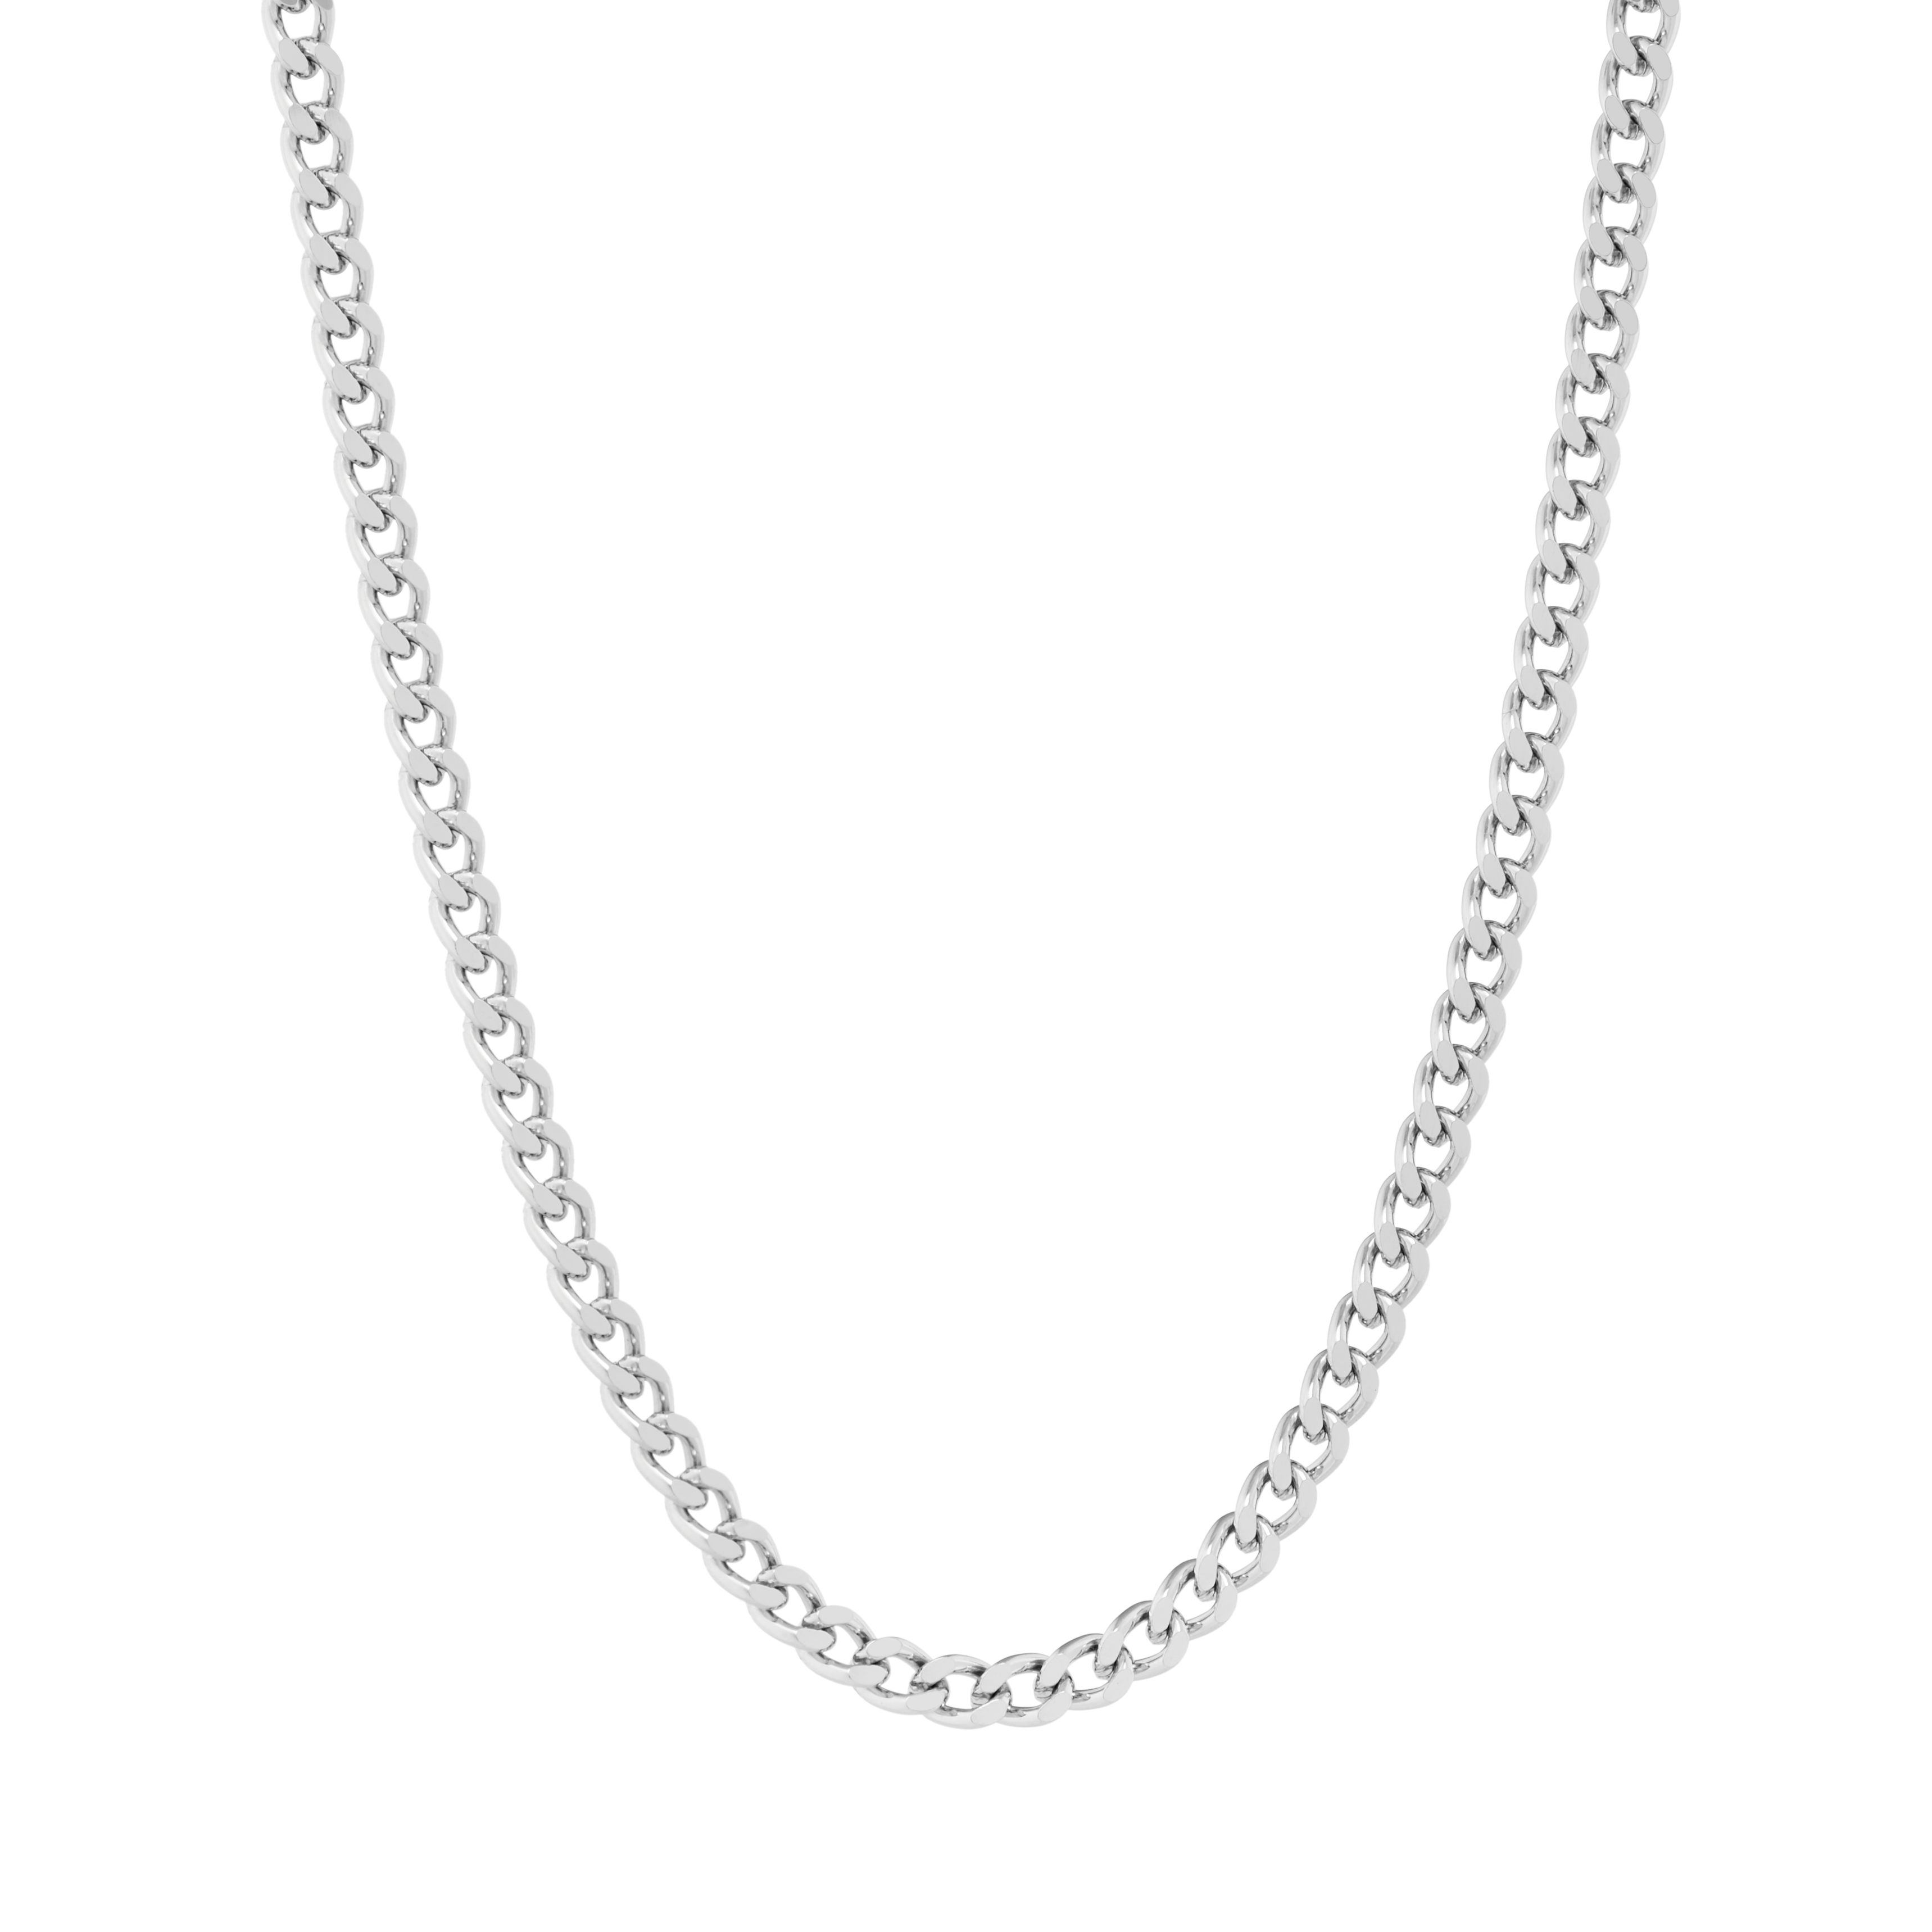 Shop Platinum Necklace Chains Diamond Cut Curb Chain Necklace